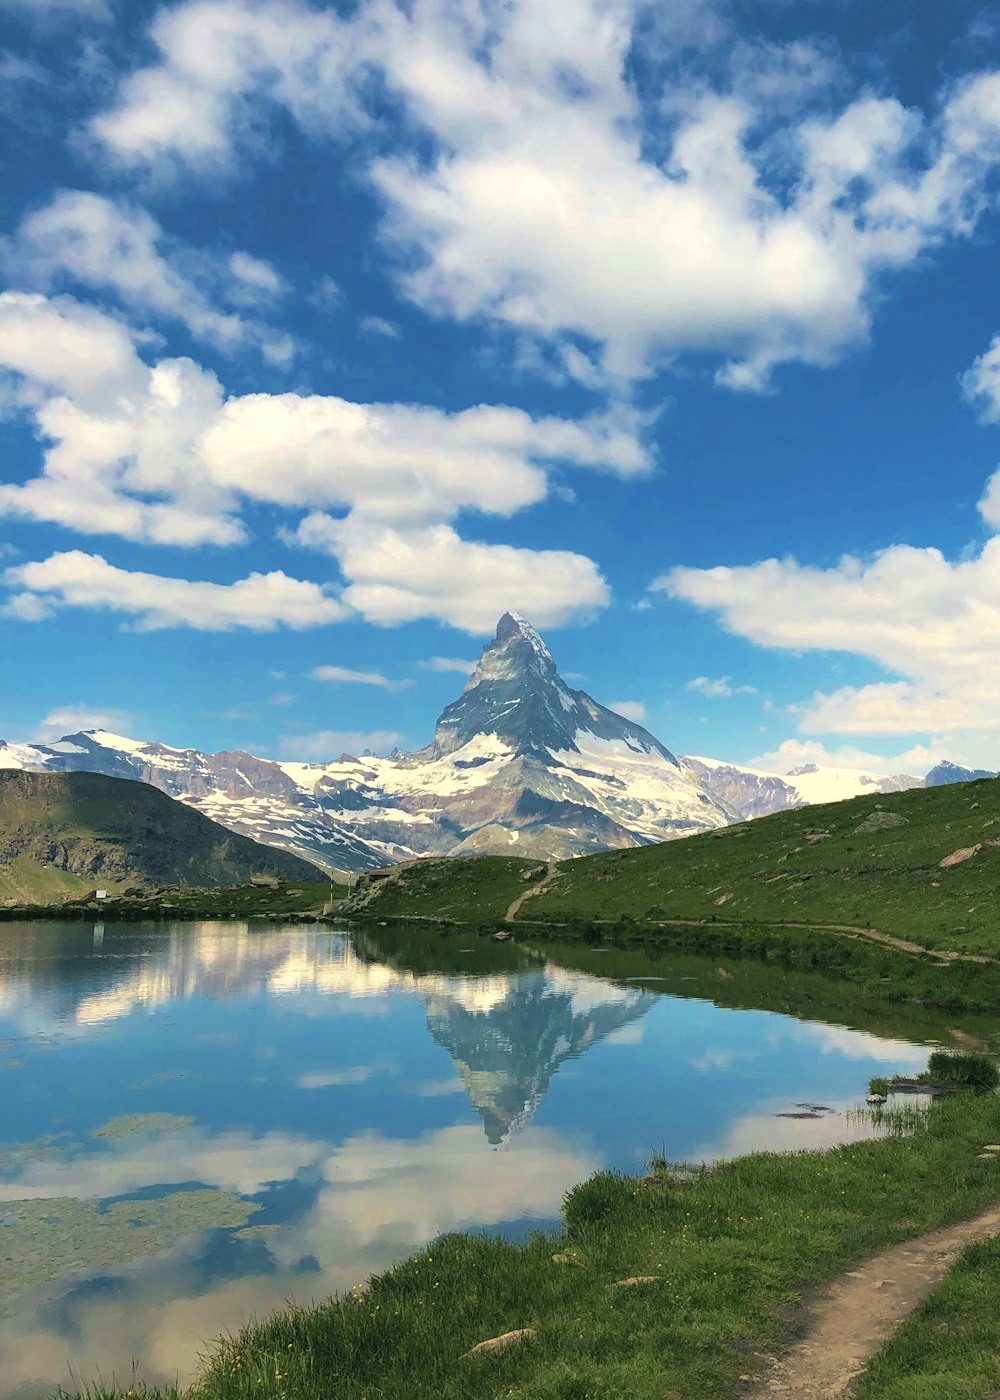 Montagna innevata vicino al lago sotto il cielo blu e le nuvole bianche durante il giorno